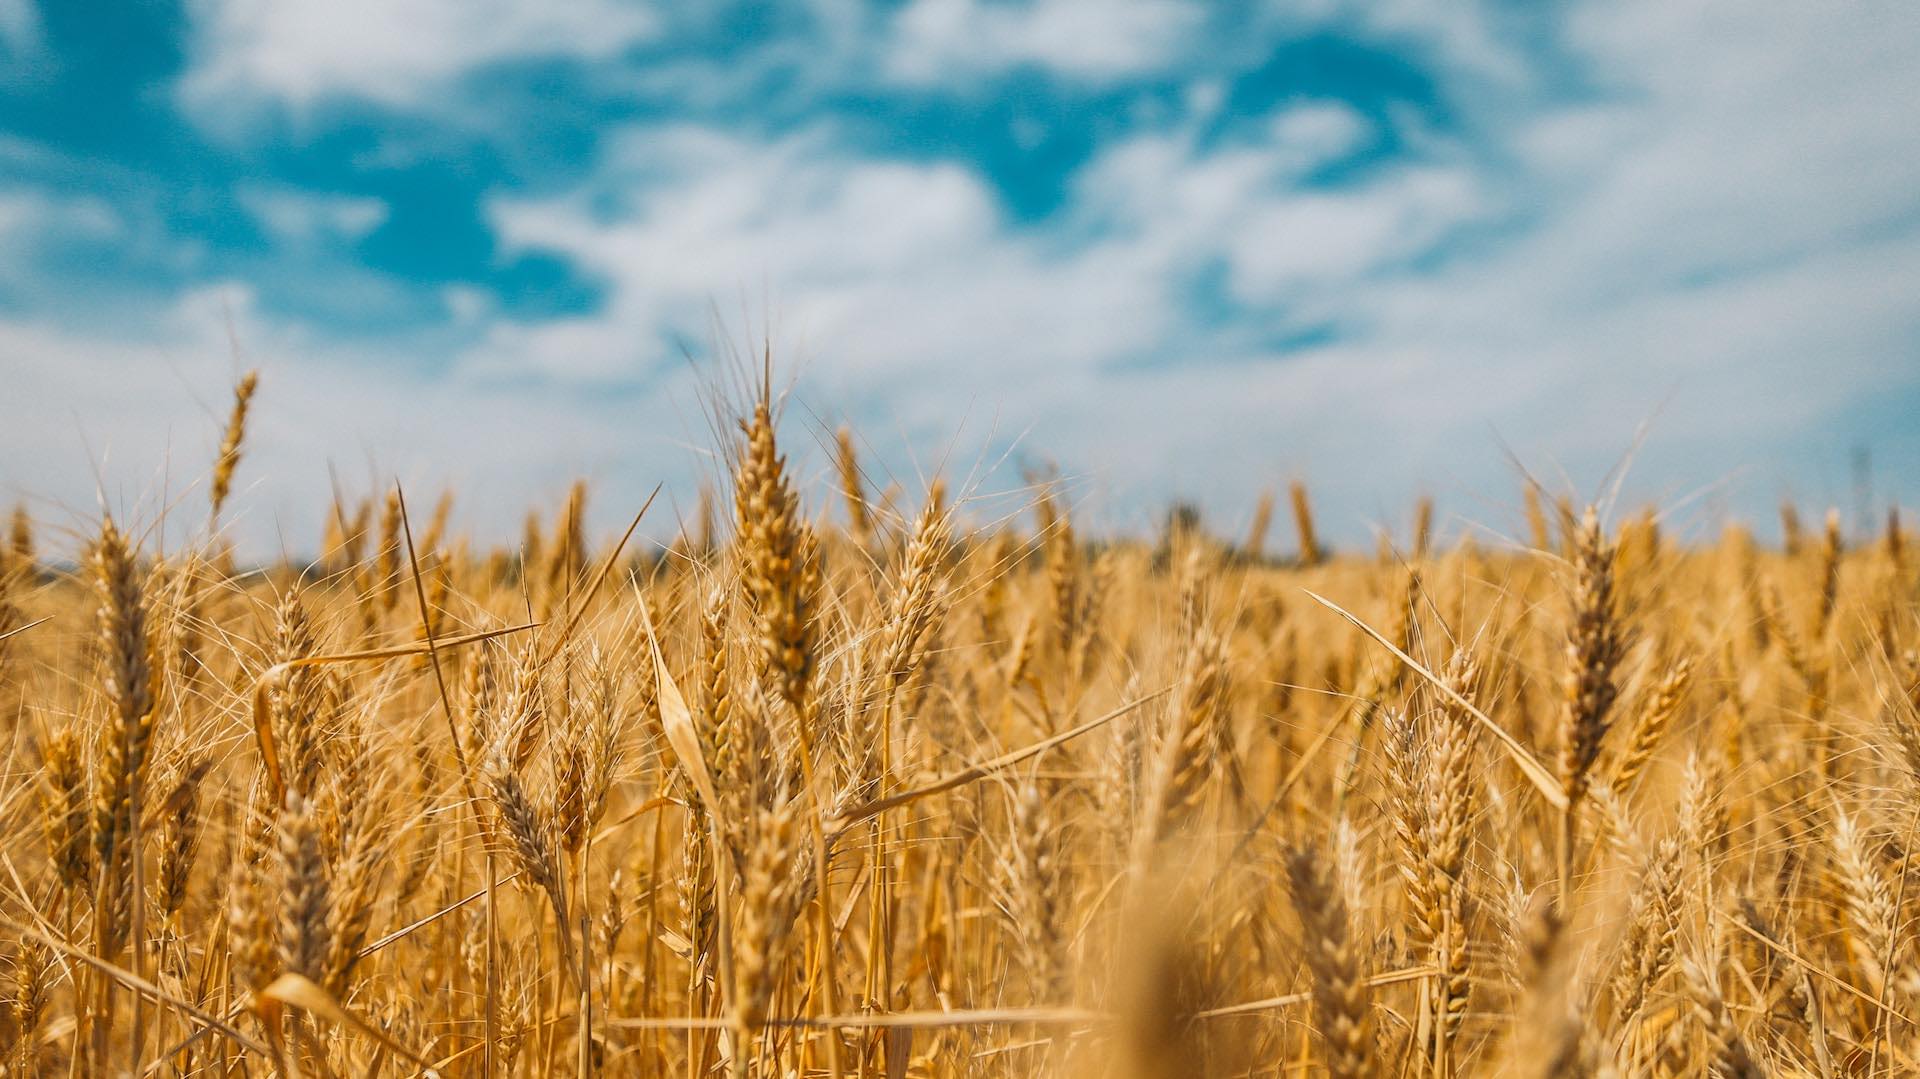 Цены на пшеницу в Чикаго снижаются, несмотря на увеличение импорта в Китай